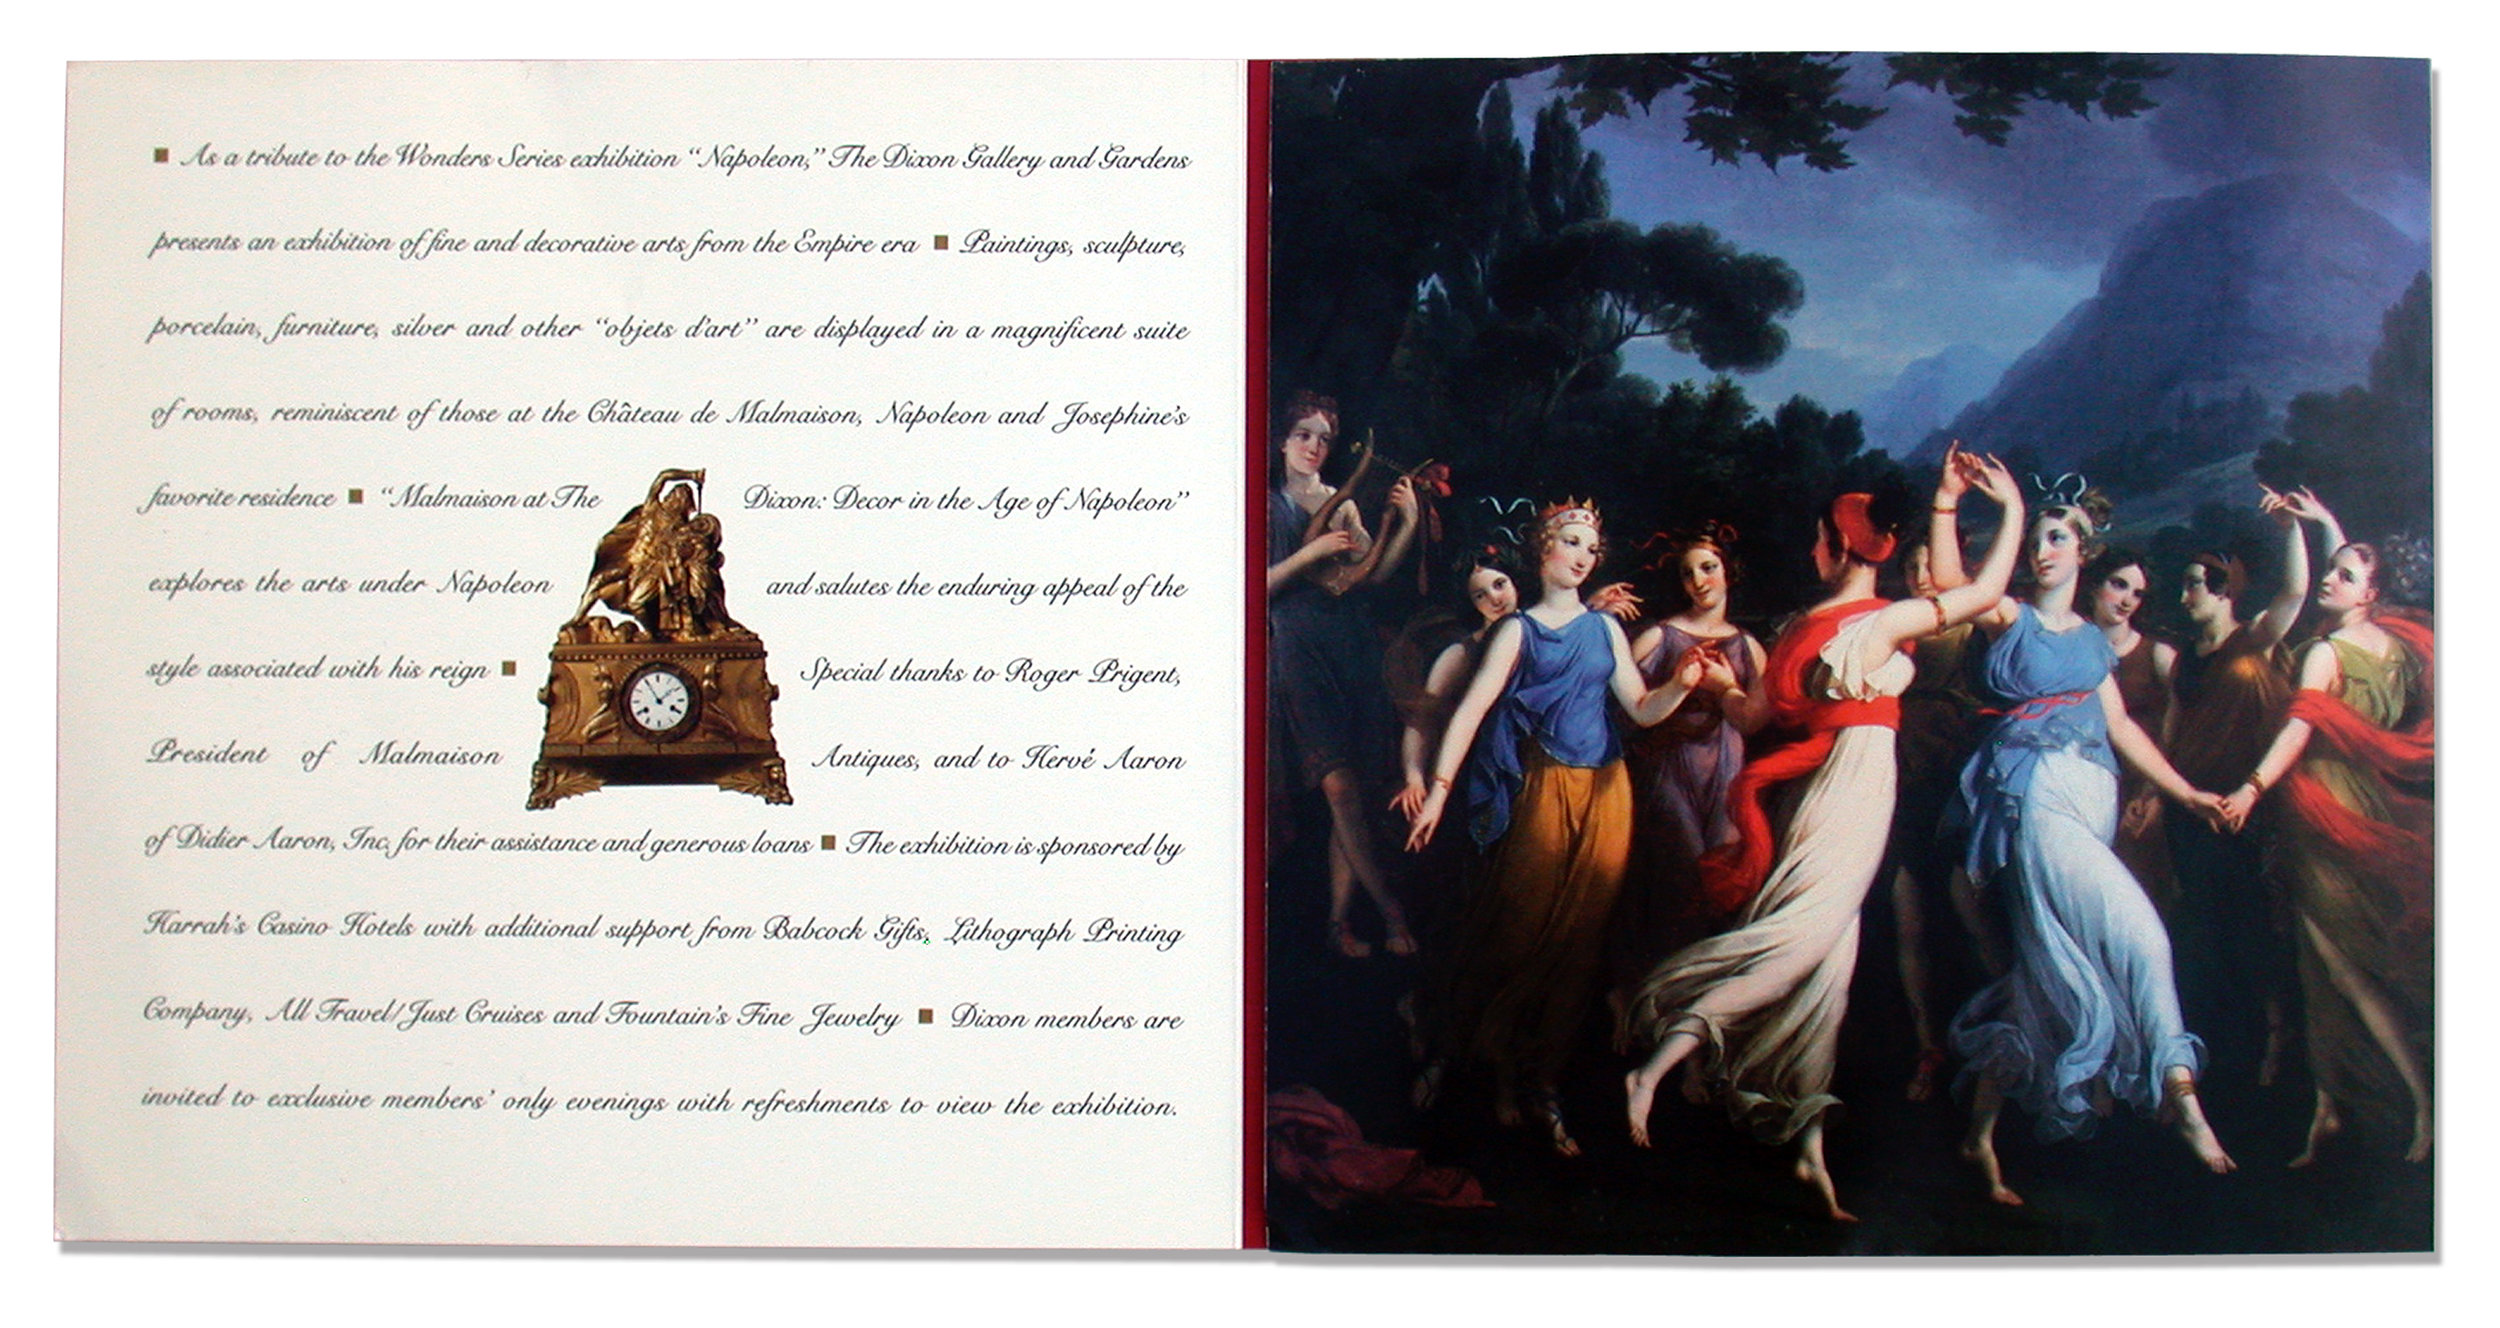  Dixon Gallery &amp; Gardens “Malmaison at The Dixon Decor in the Age of Napoleon” invitation spread 